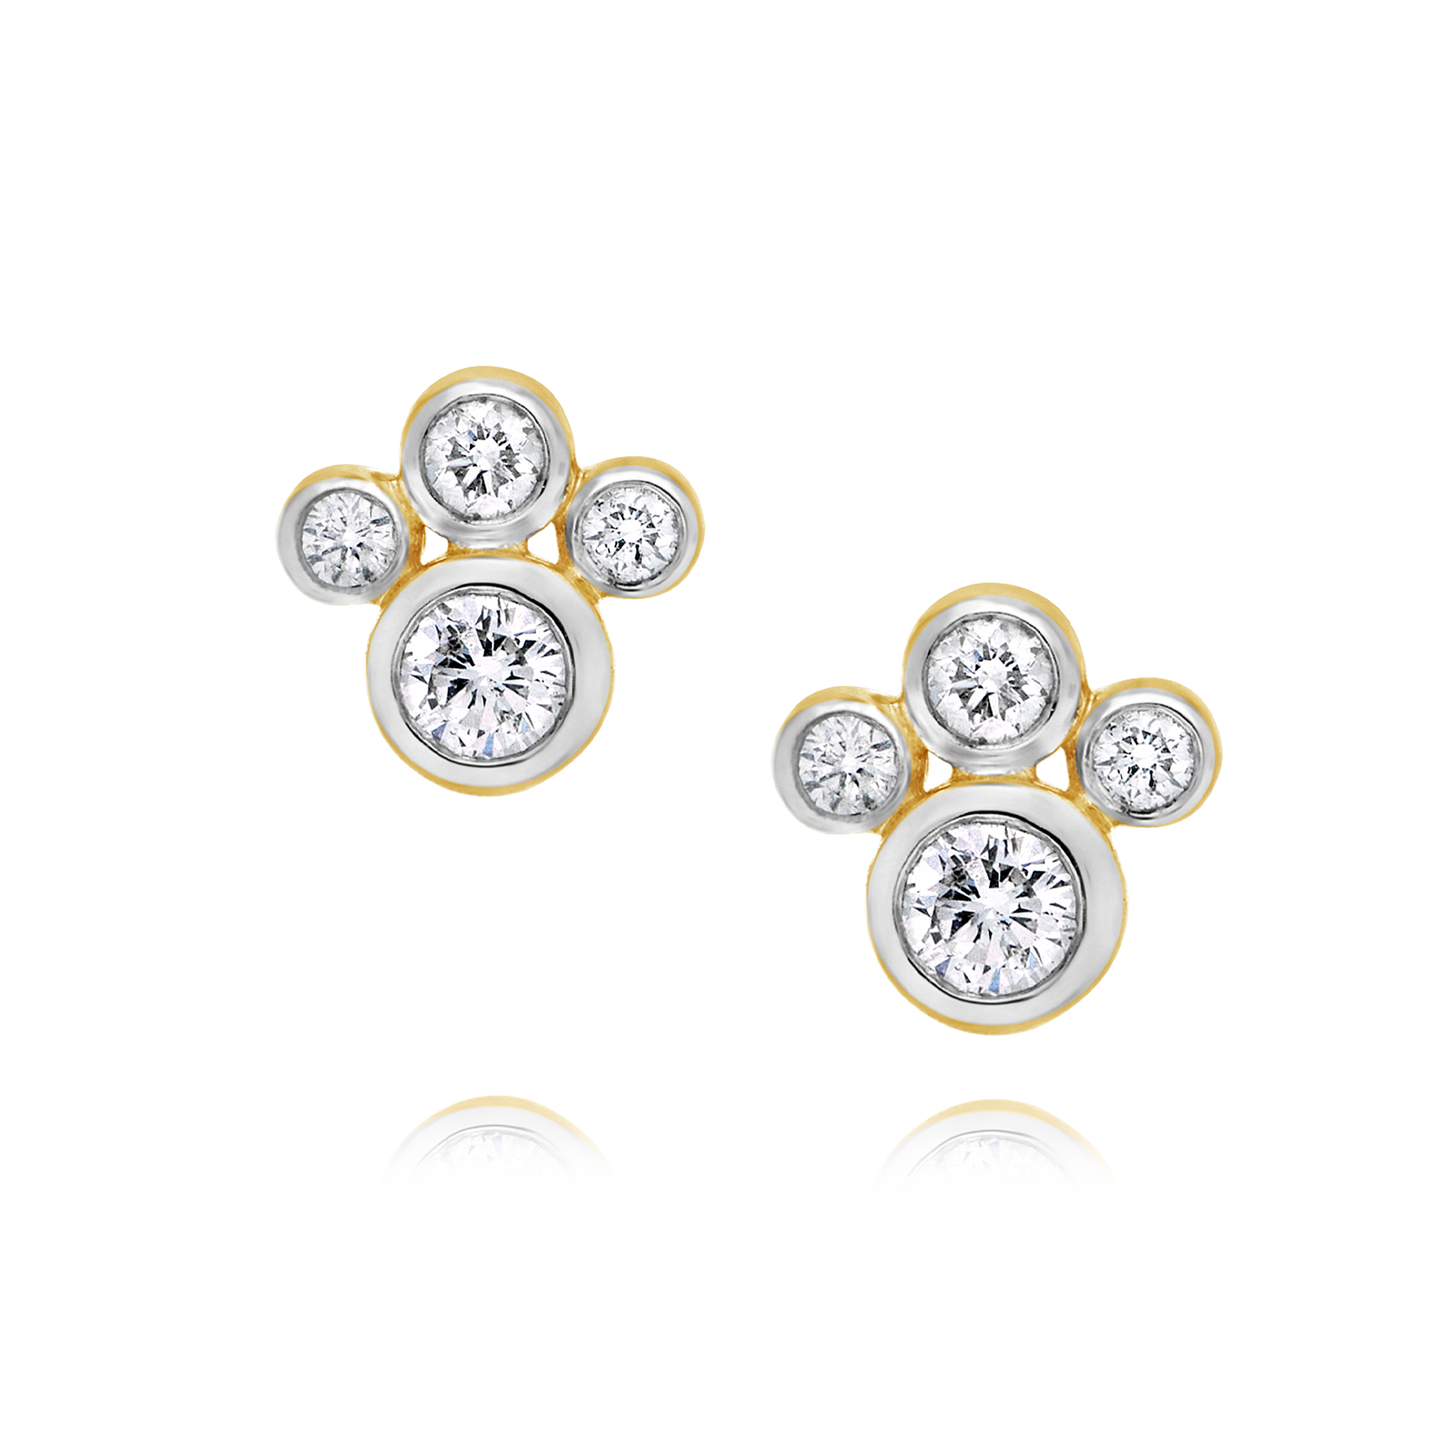 Appleby Fluer Diamond Earrings